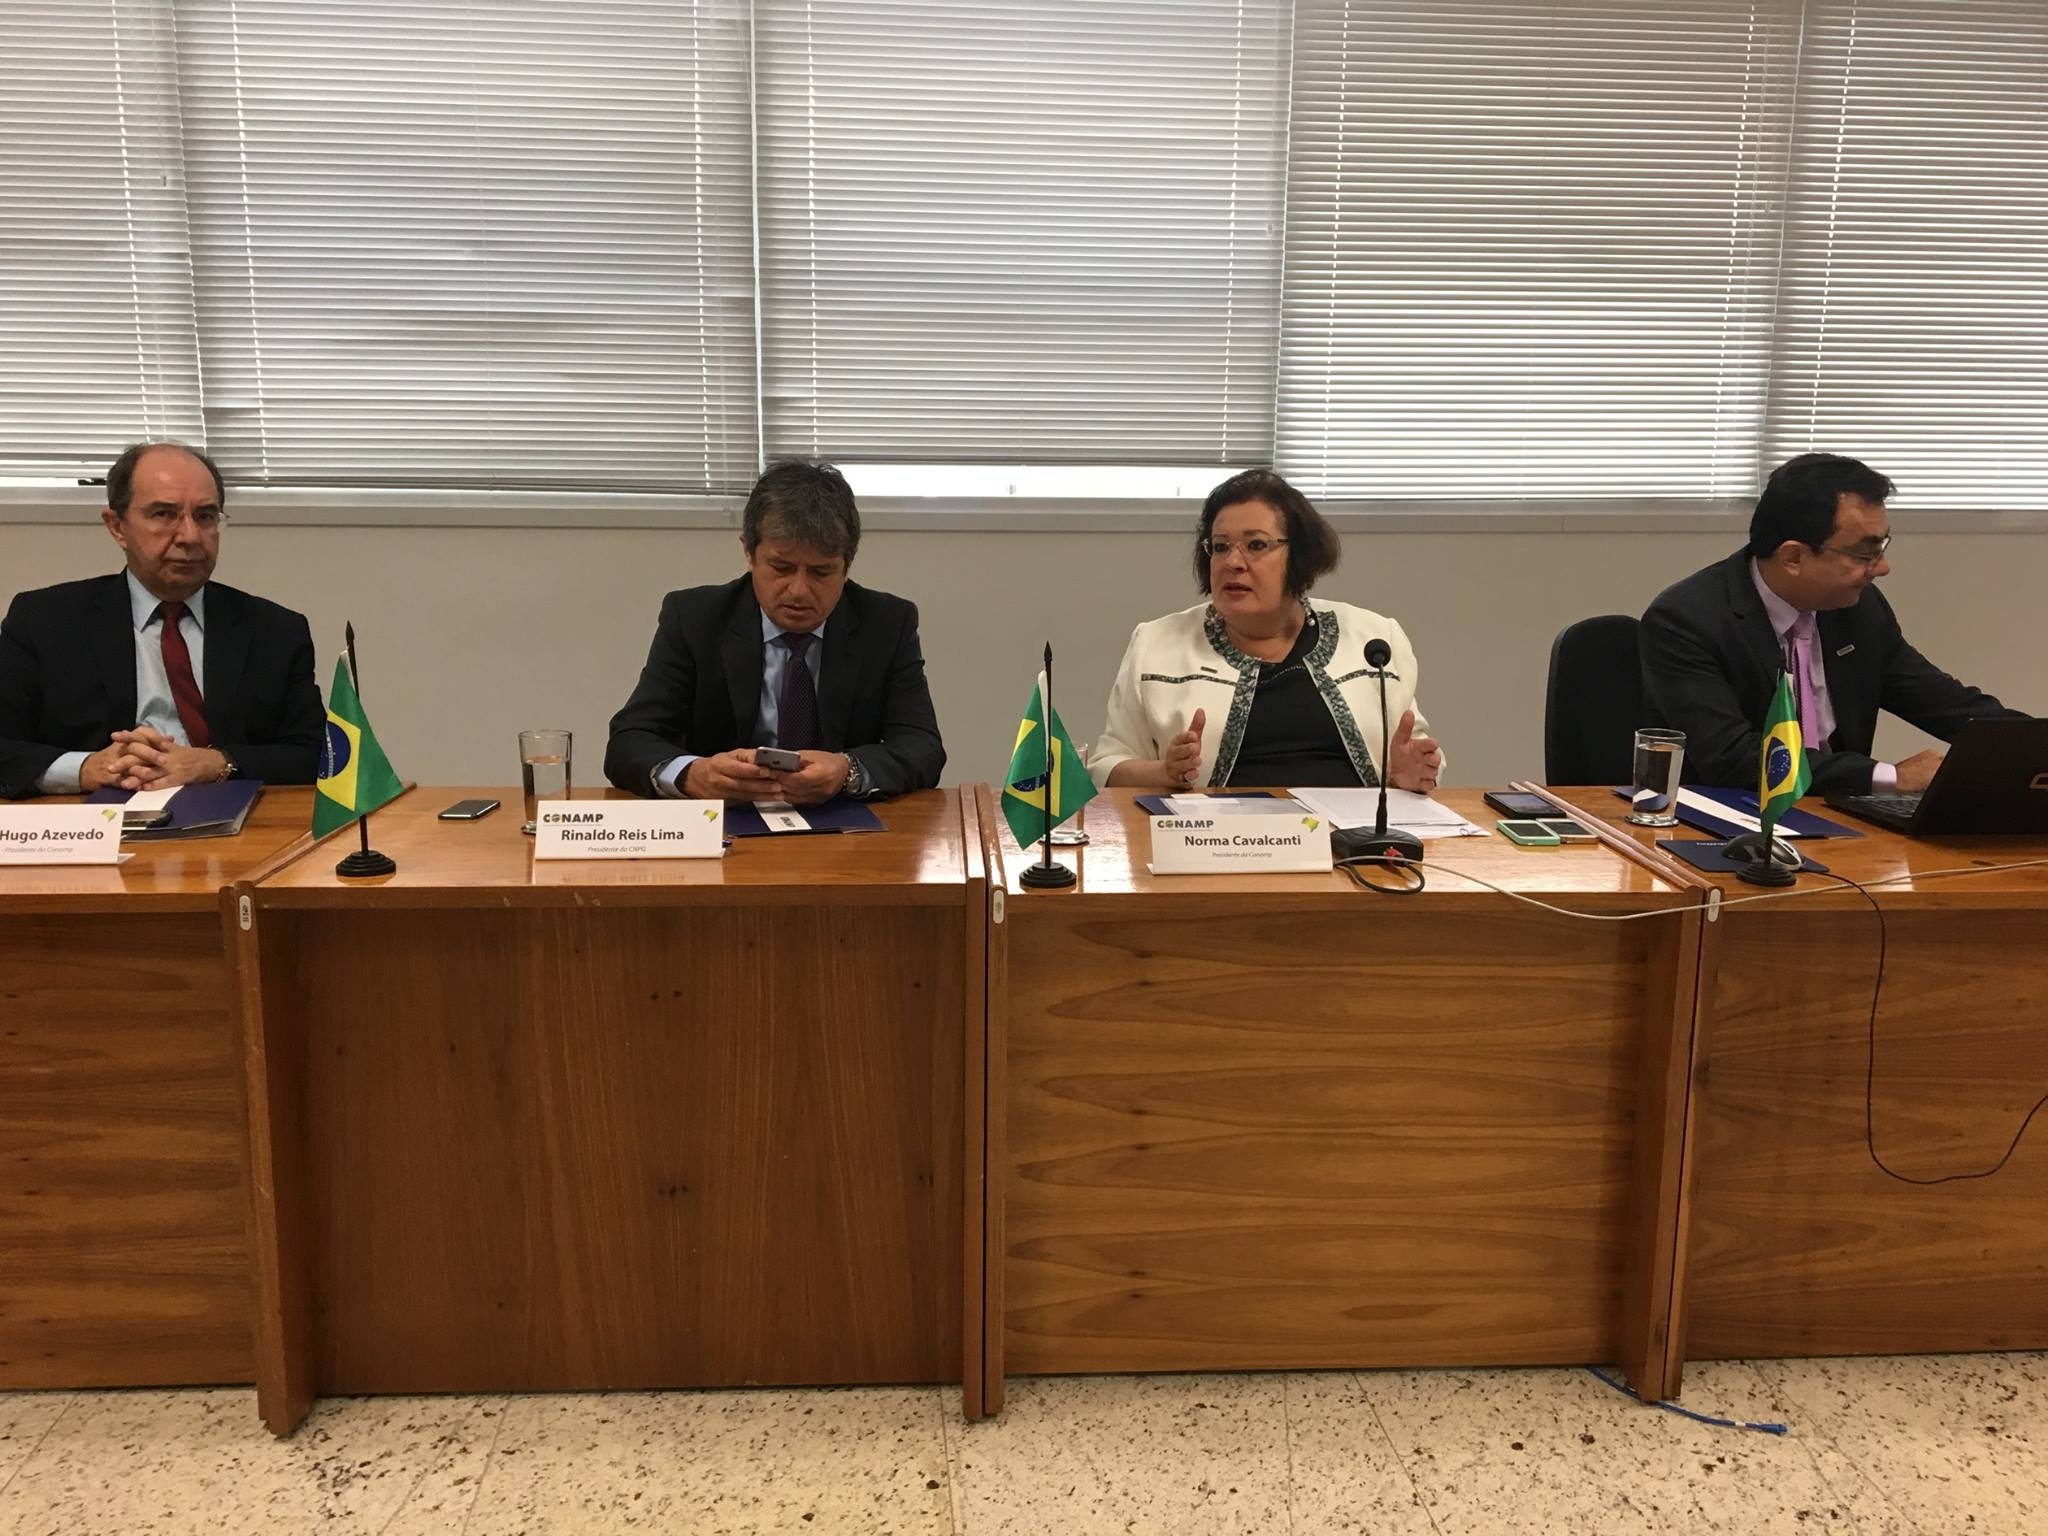 Conselho deliberativo da CONAMP reúne-se em Brasília